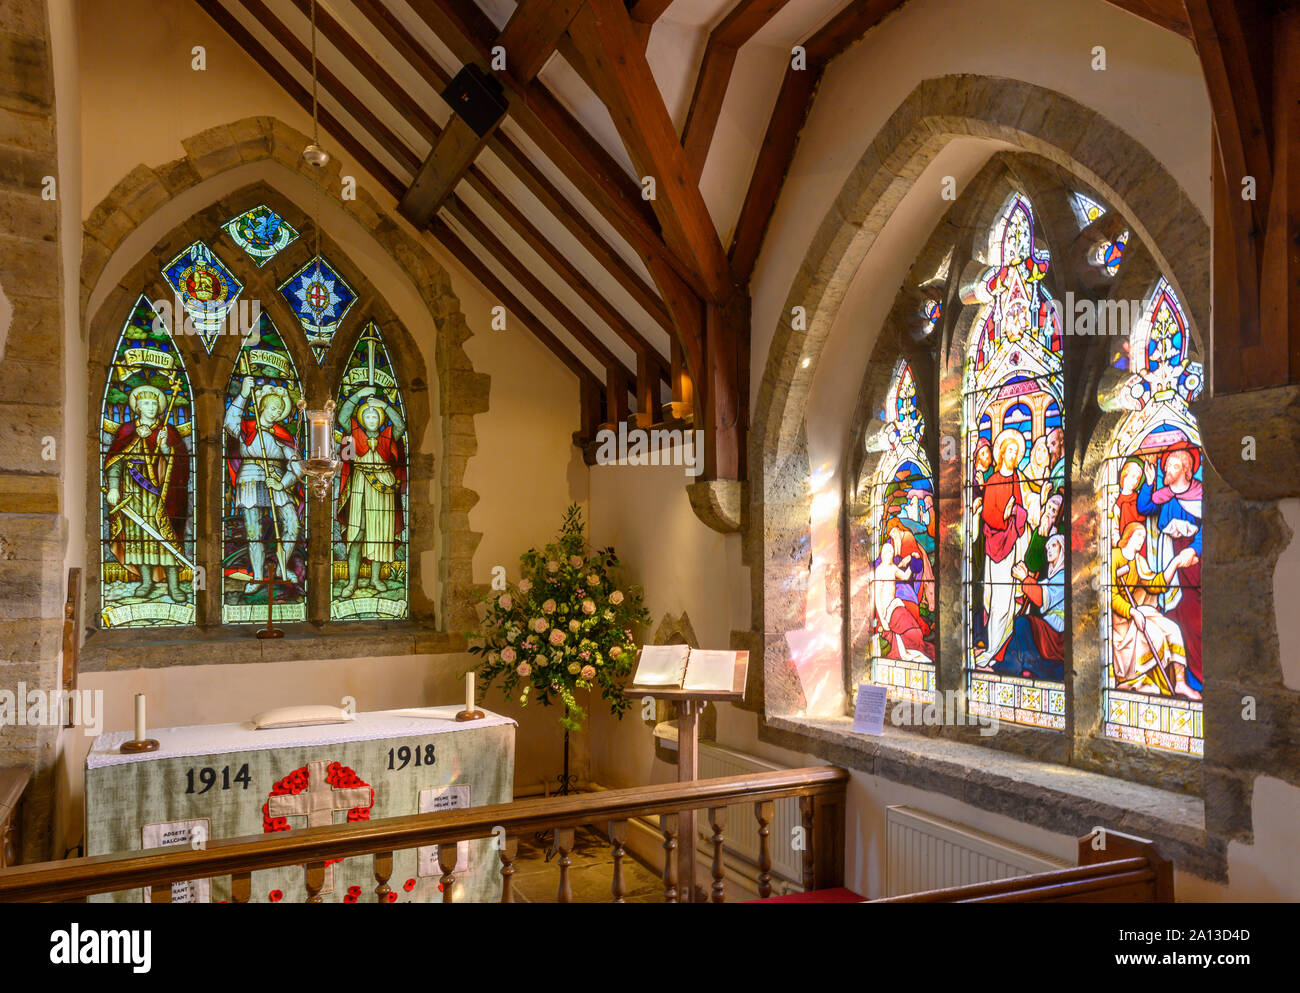 Vista interna di altare e windows in commemorazione delle Guerre Mondiali St Peter ad Vincula chiesa parrocchiale di Wisborough Green, West Sussex, in Inghilterra, Regno Unito Foto Stock